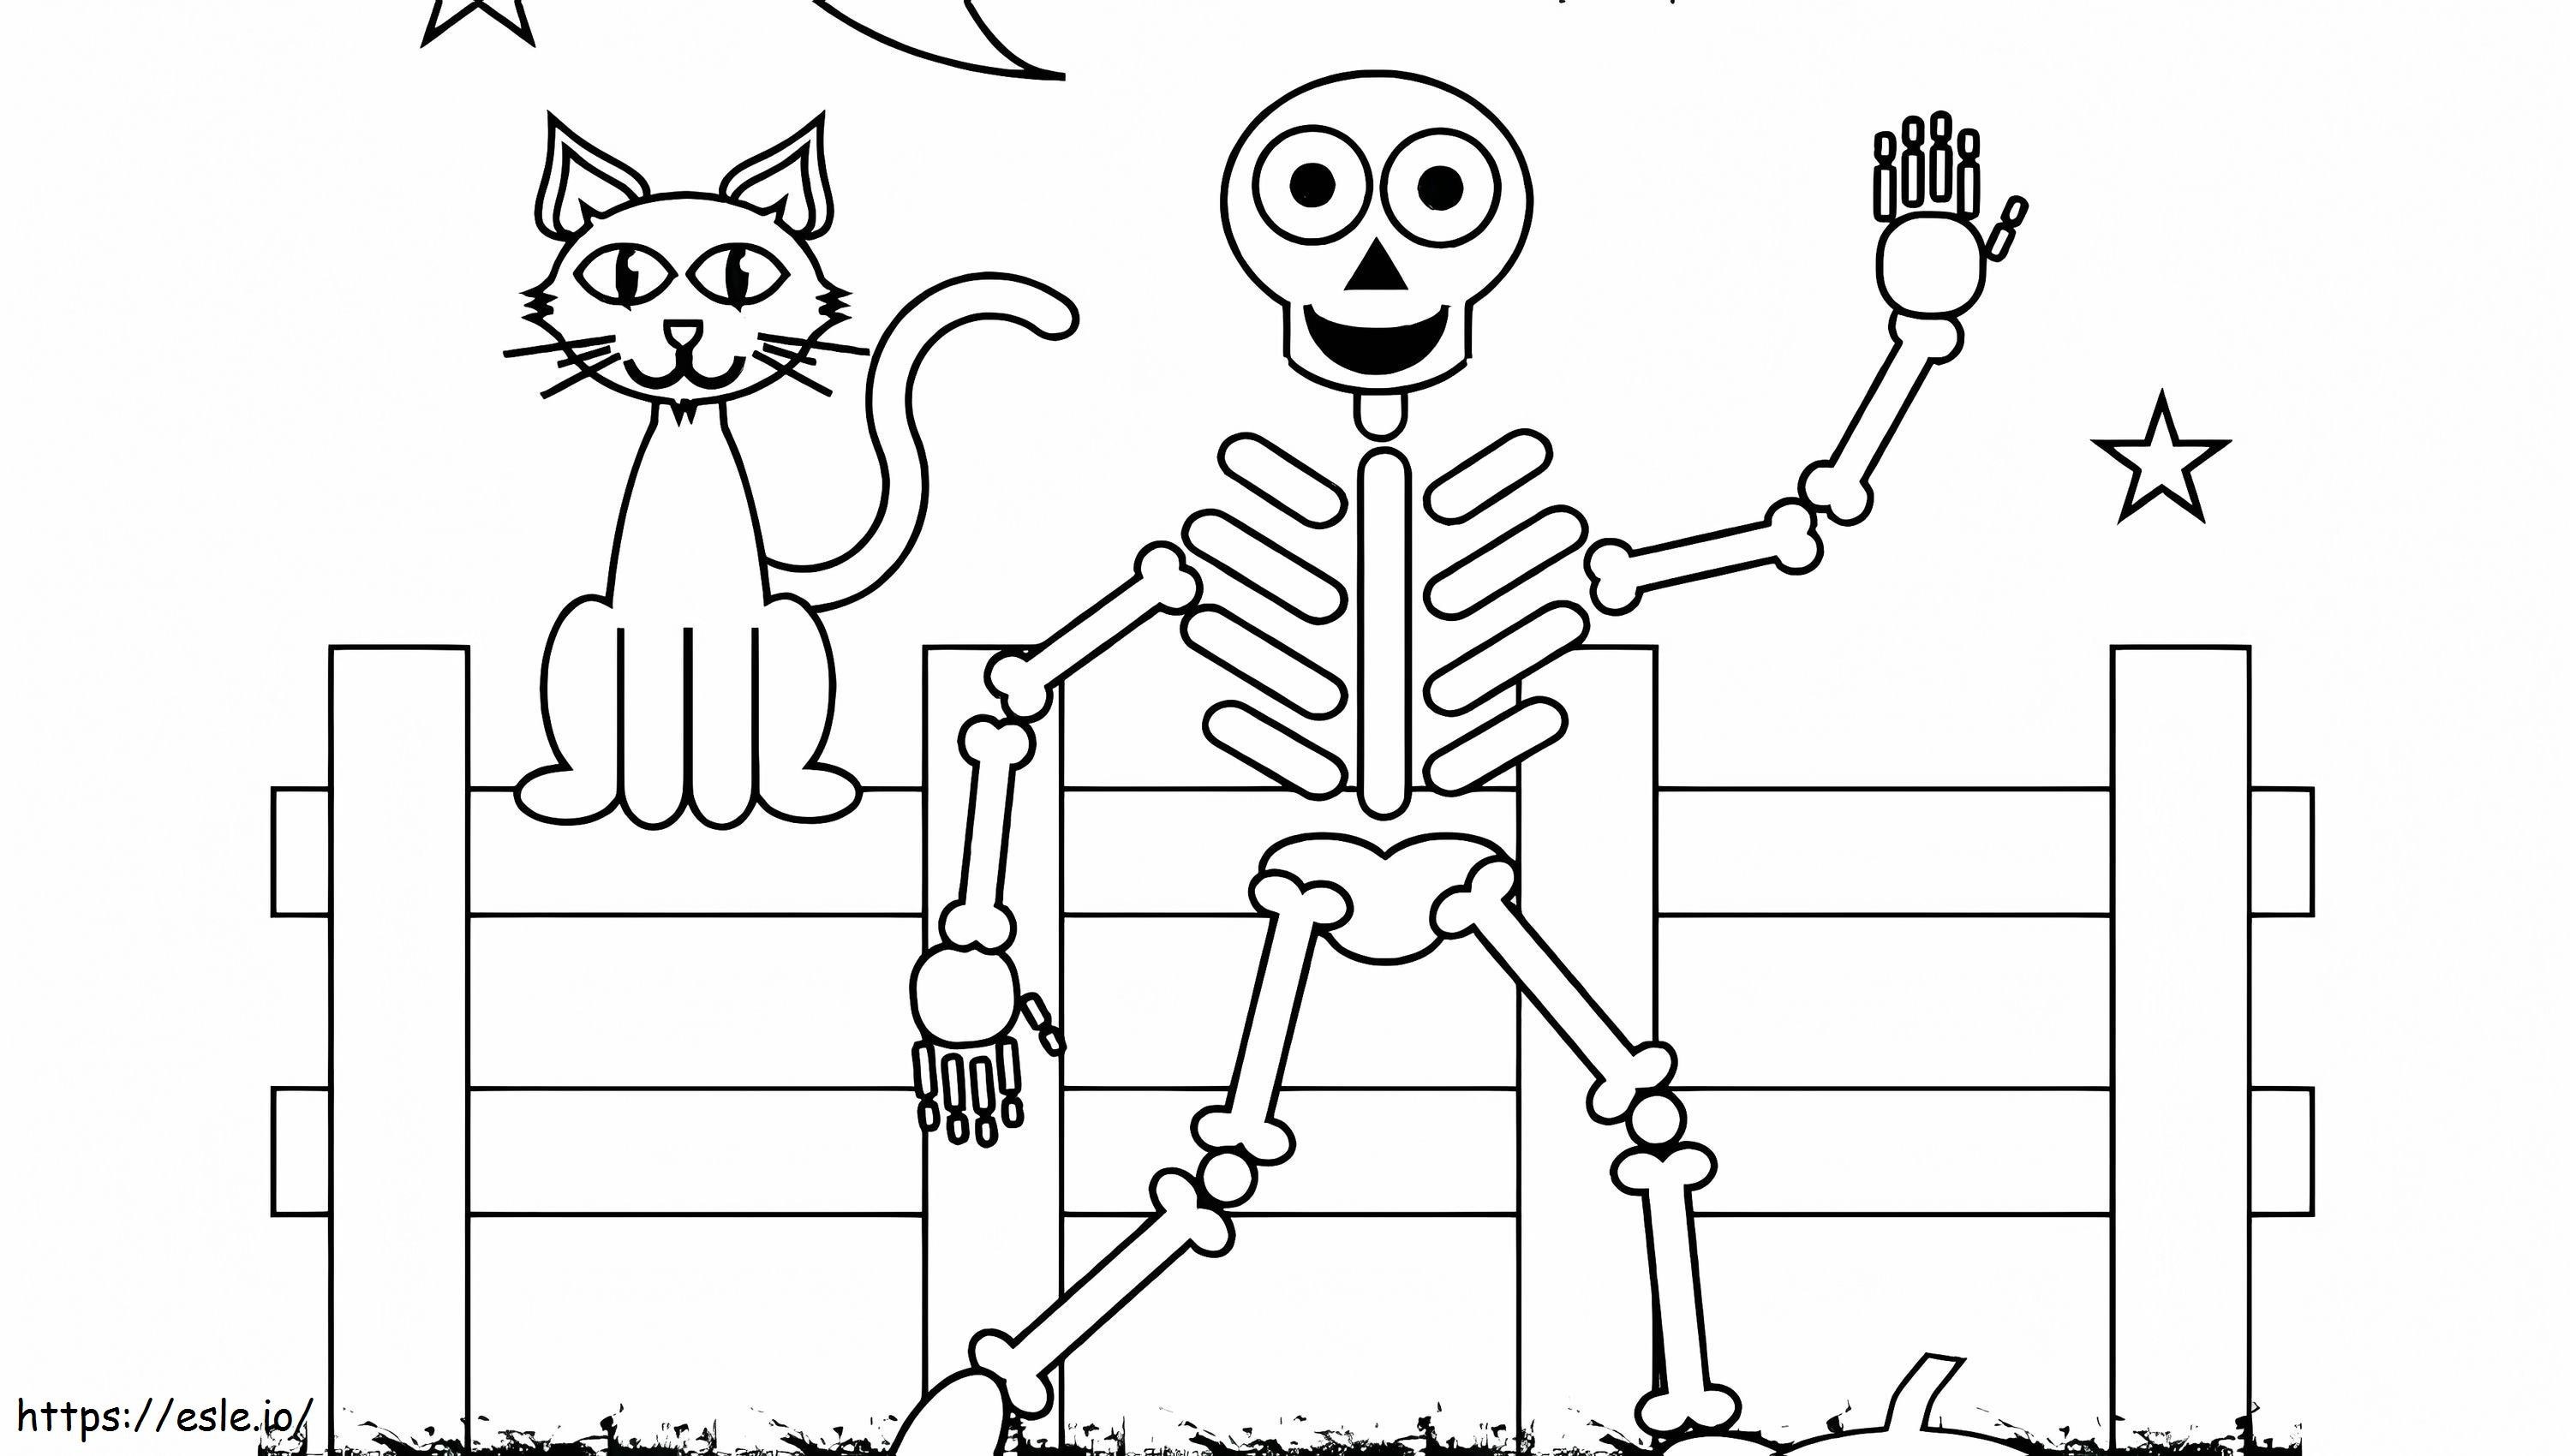 Coloriage 1539919716 Squelette imprimable gratuit Squelette humain Squelette imprimable Squelette de décoration contemporaine Squelette imprimable gratuit Halloween Sk à imprimer dessin